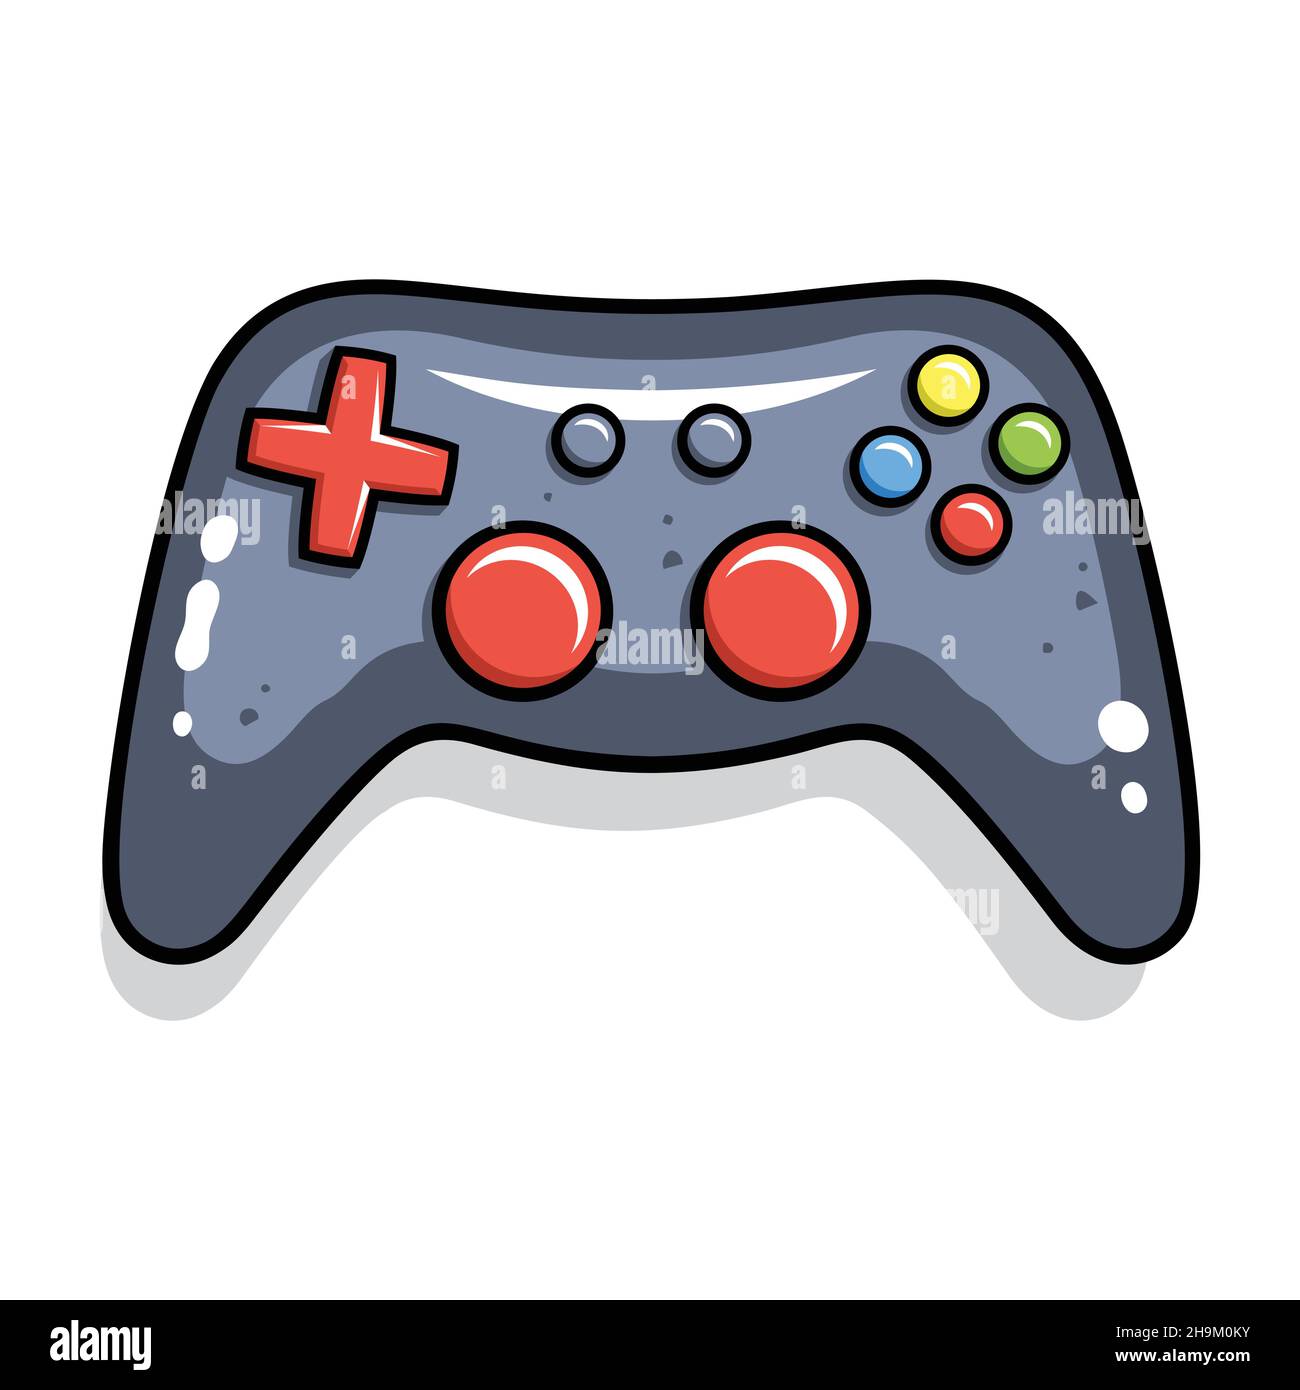 Illustrazione del Gamepad del joystick vettoriale. Controller di gioco per videogiochi moderni Illustrazione Vettoriale